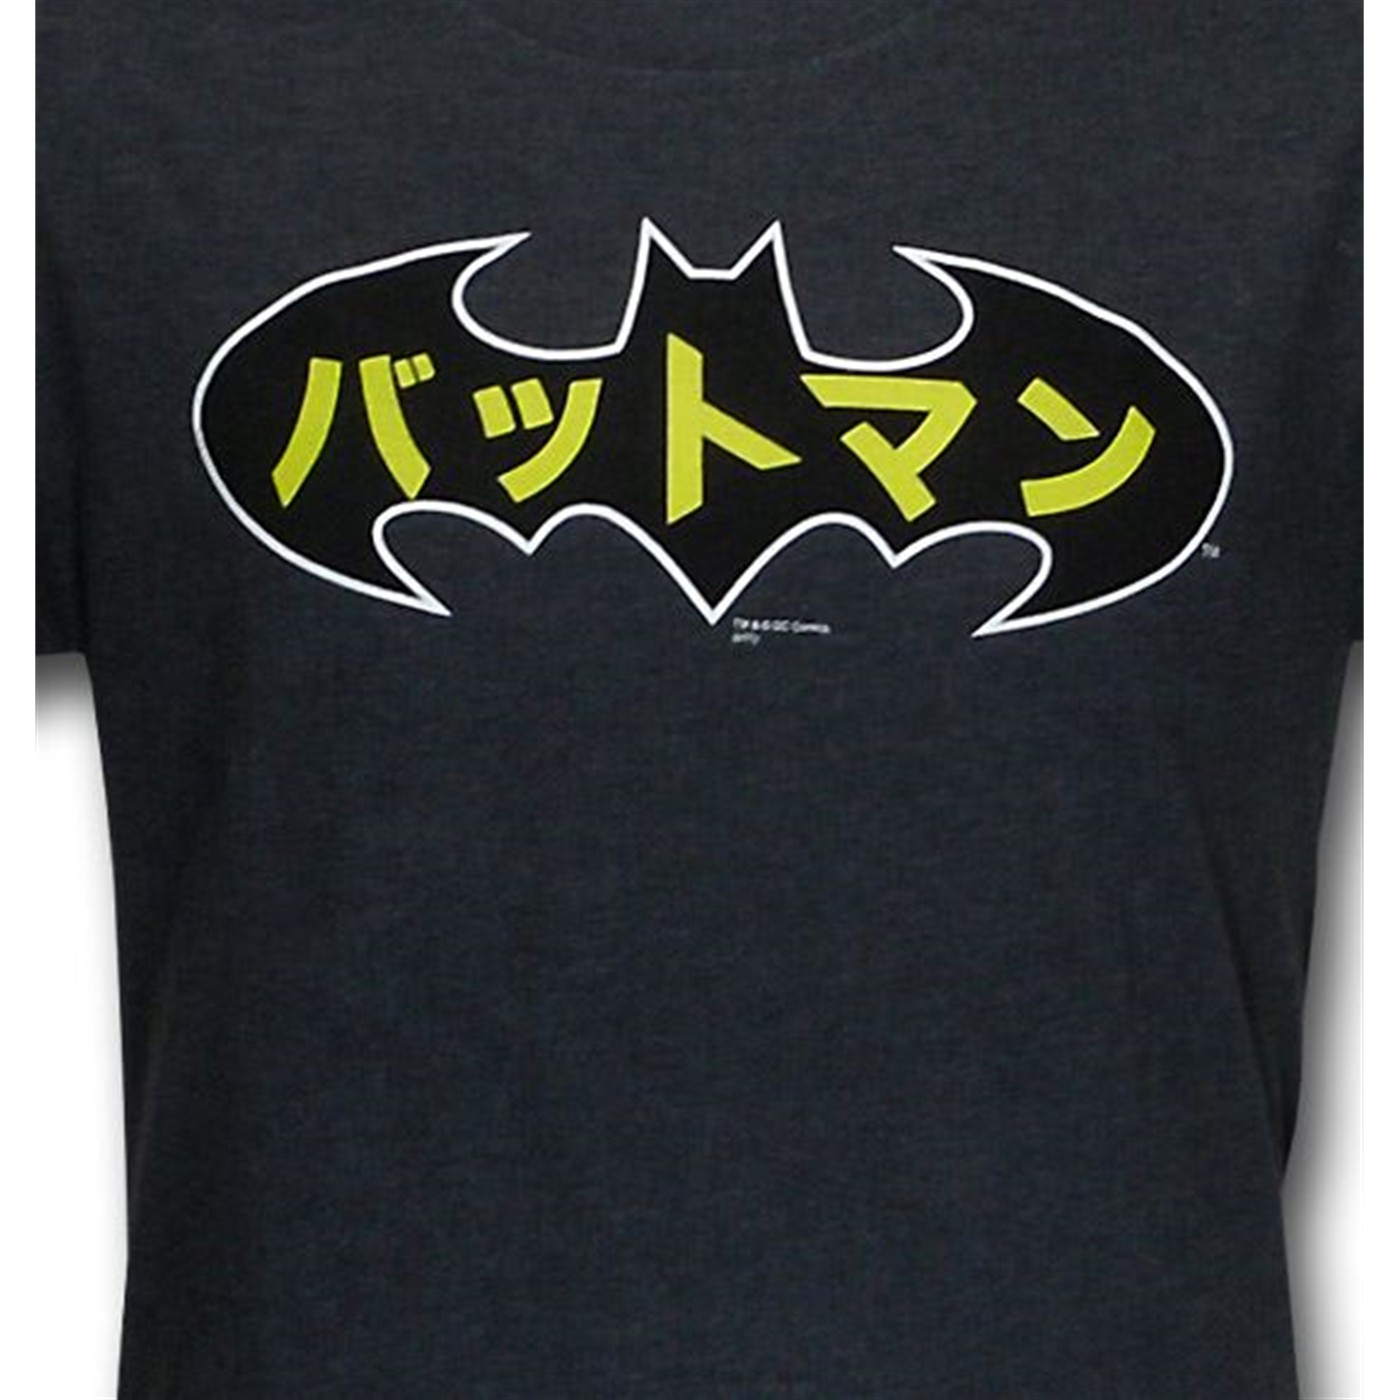 Batman Japanese Symbol T-Shirt